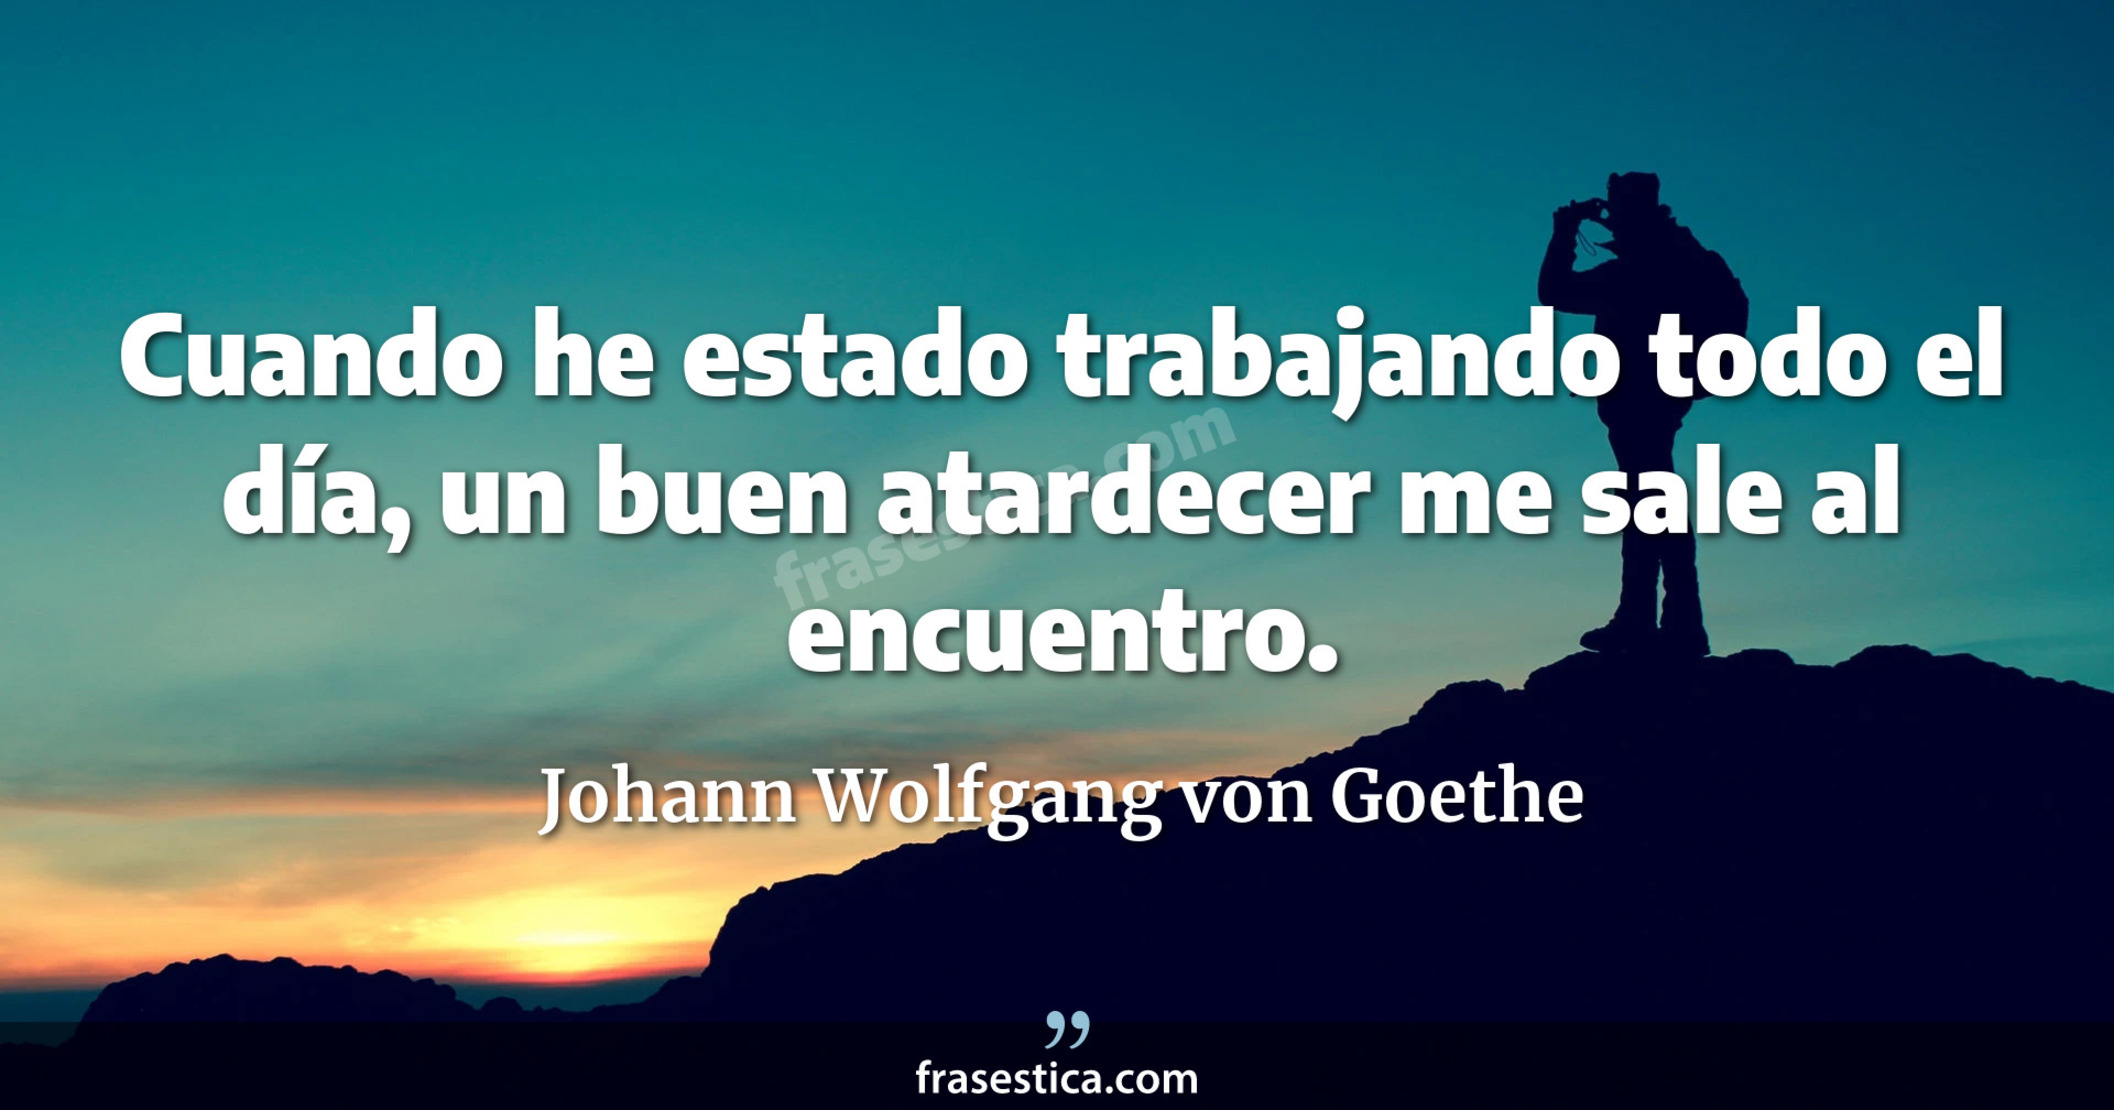 Cuando he estado trabajando todo el día, un buen atardecer me sale al encuentro. - Johann Wolfgang von Goethe